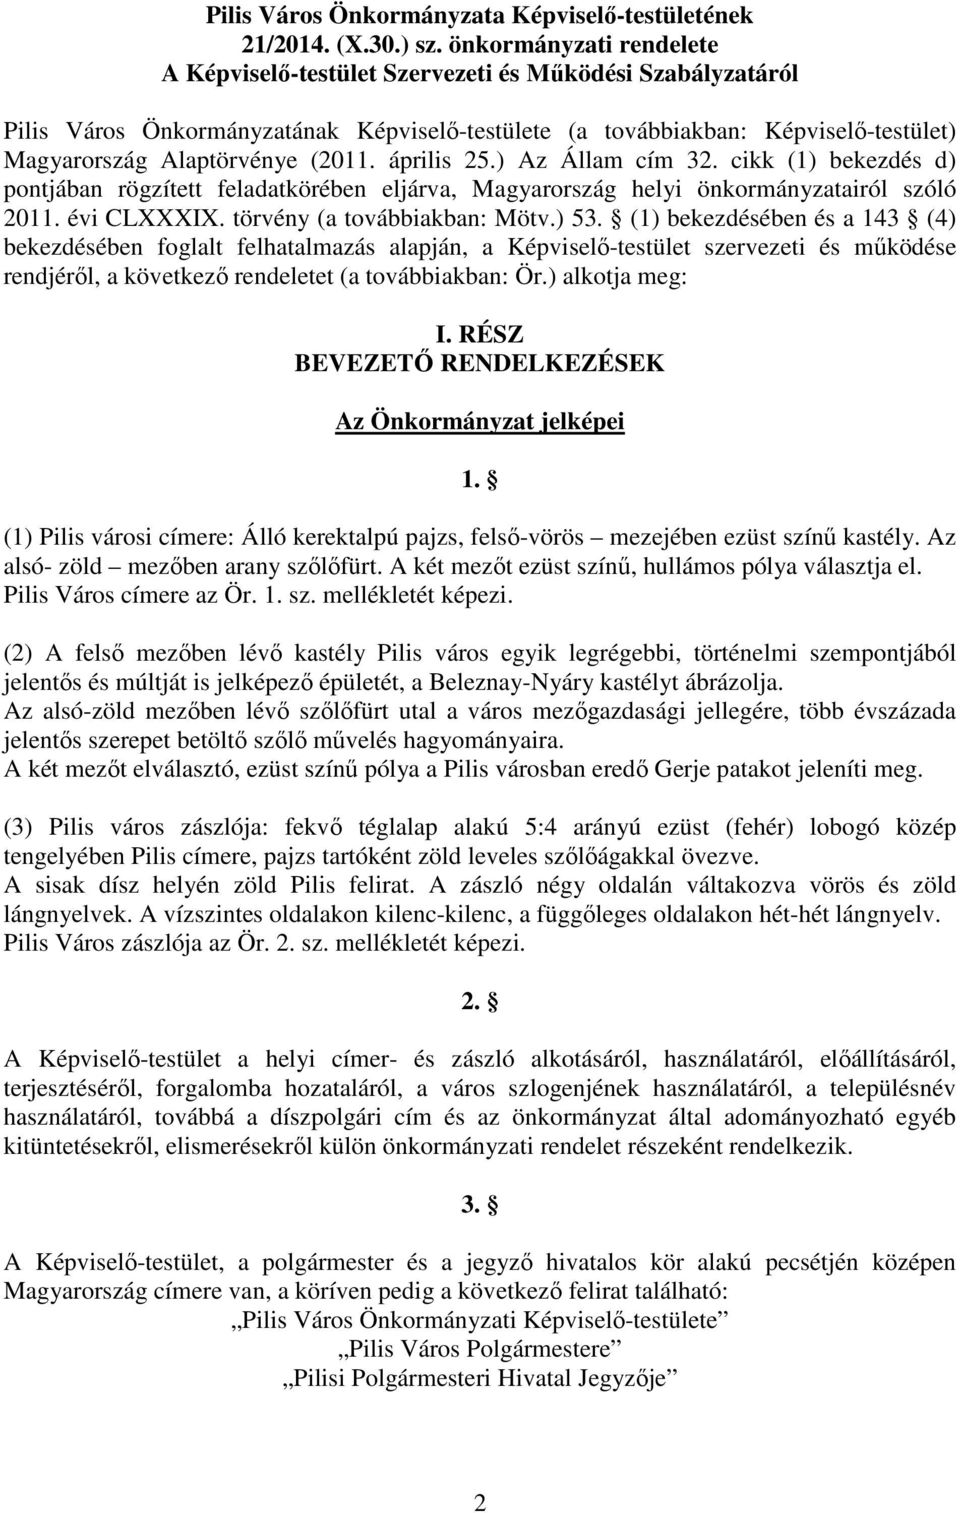 (2011. április 25.) Az Állam cím 32. cikk (1) bekezdés d) pontjában rögzített feladatkörében eljárva, Magyarország helyi önkormányzatairól szóló 2011. évi CLXXXIX. törvény (a továbbiakban: Mötv.) 53.